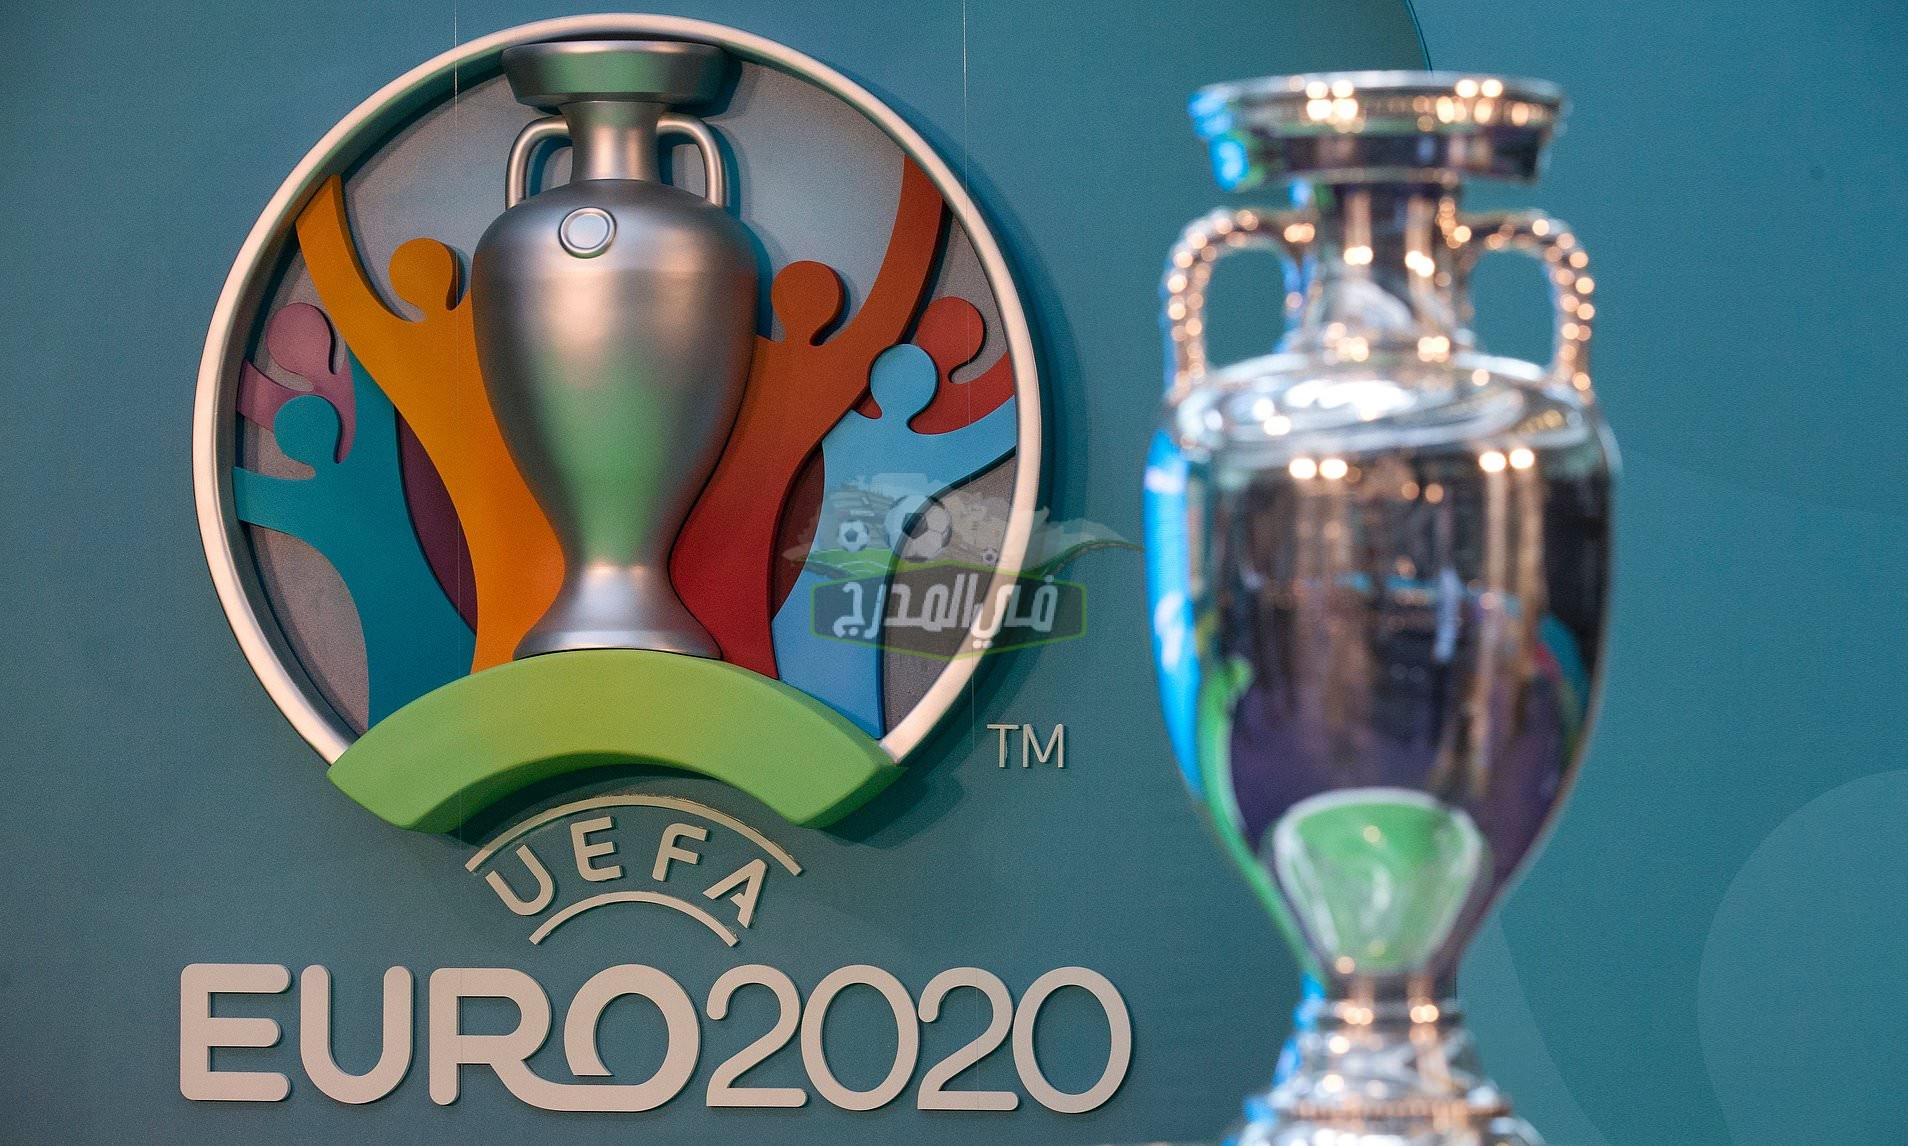 ما هي القنوات الناقلة لكأس أمم أوروبا UEFA EURO 2020.. تردد القنوات المفتوحة الناقلة ليورو 2020